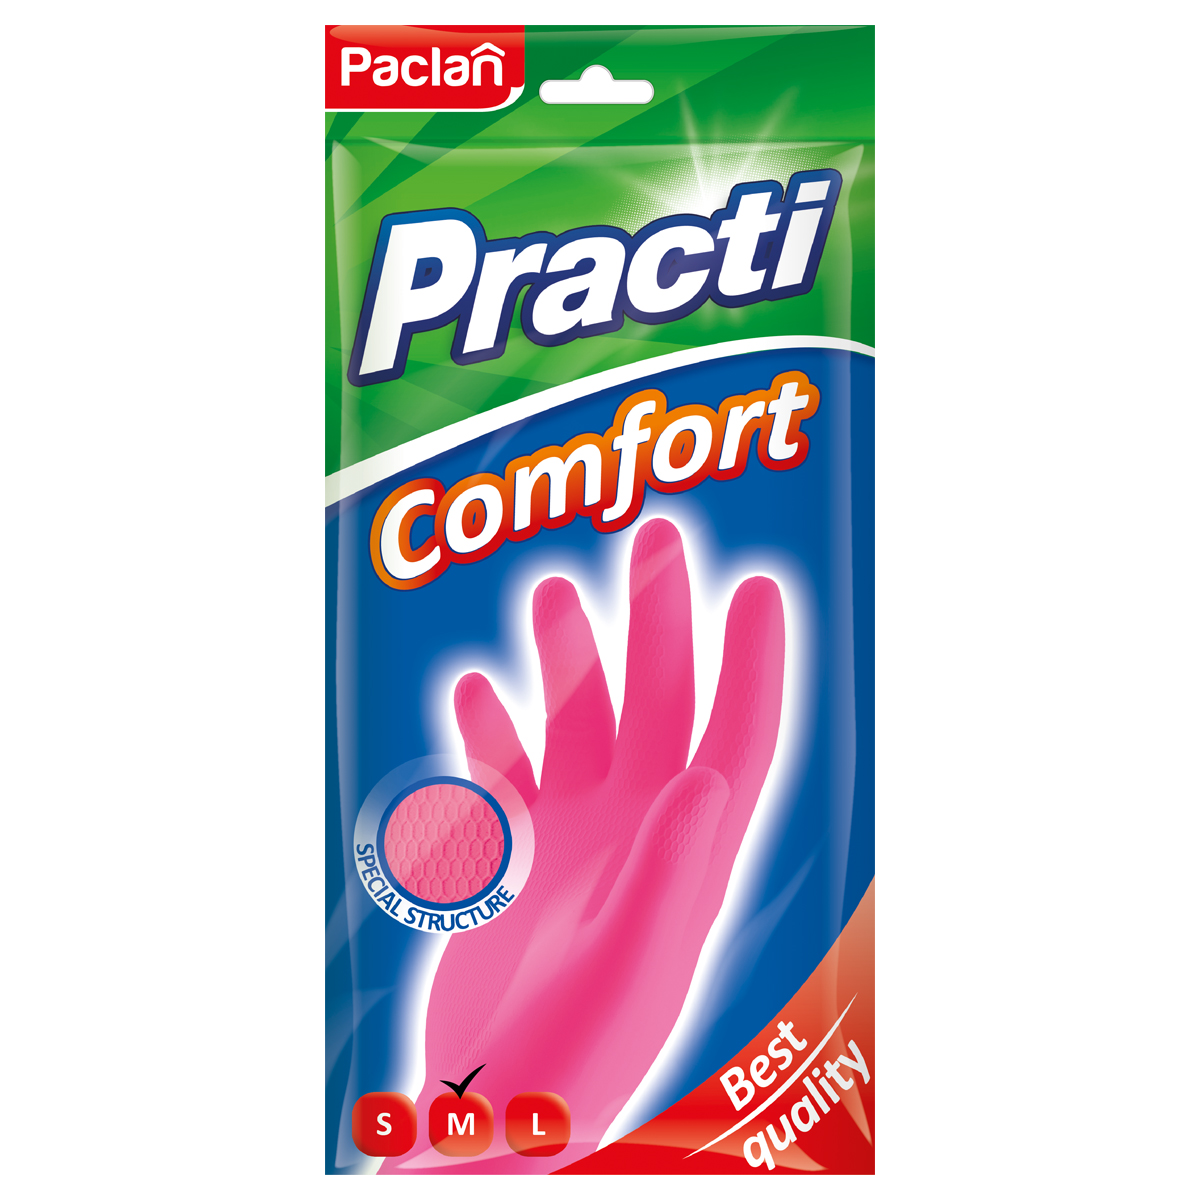 Перчатки резиновые хозяйственные Paclan "Practi. Comfort", разм. М, х/б напыление, розовые, пакет с европодвесом